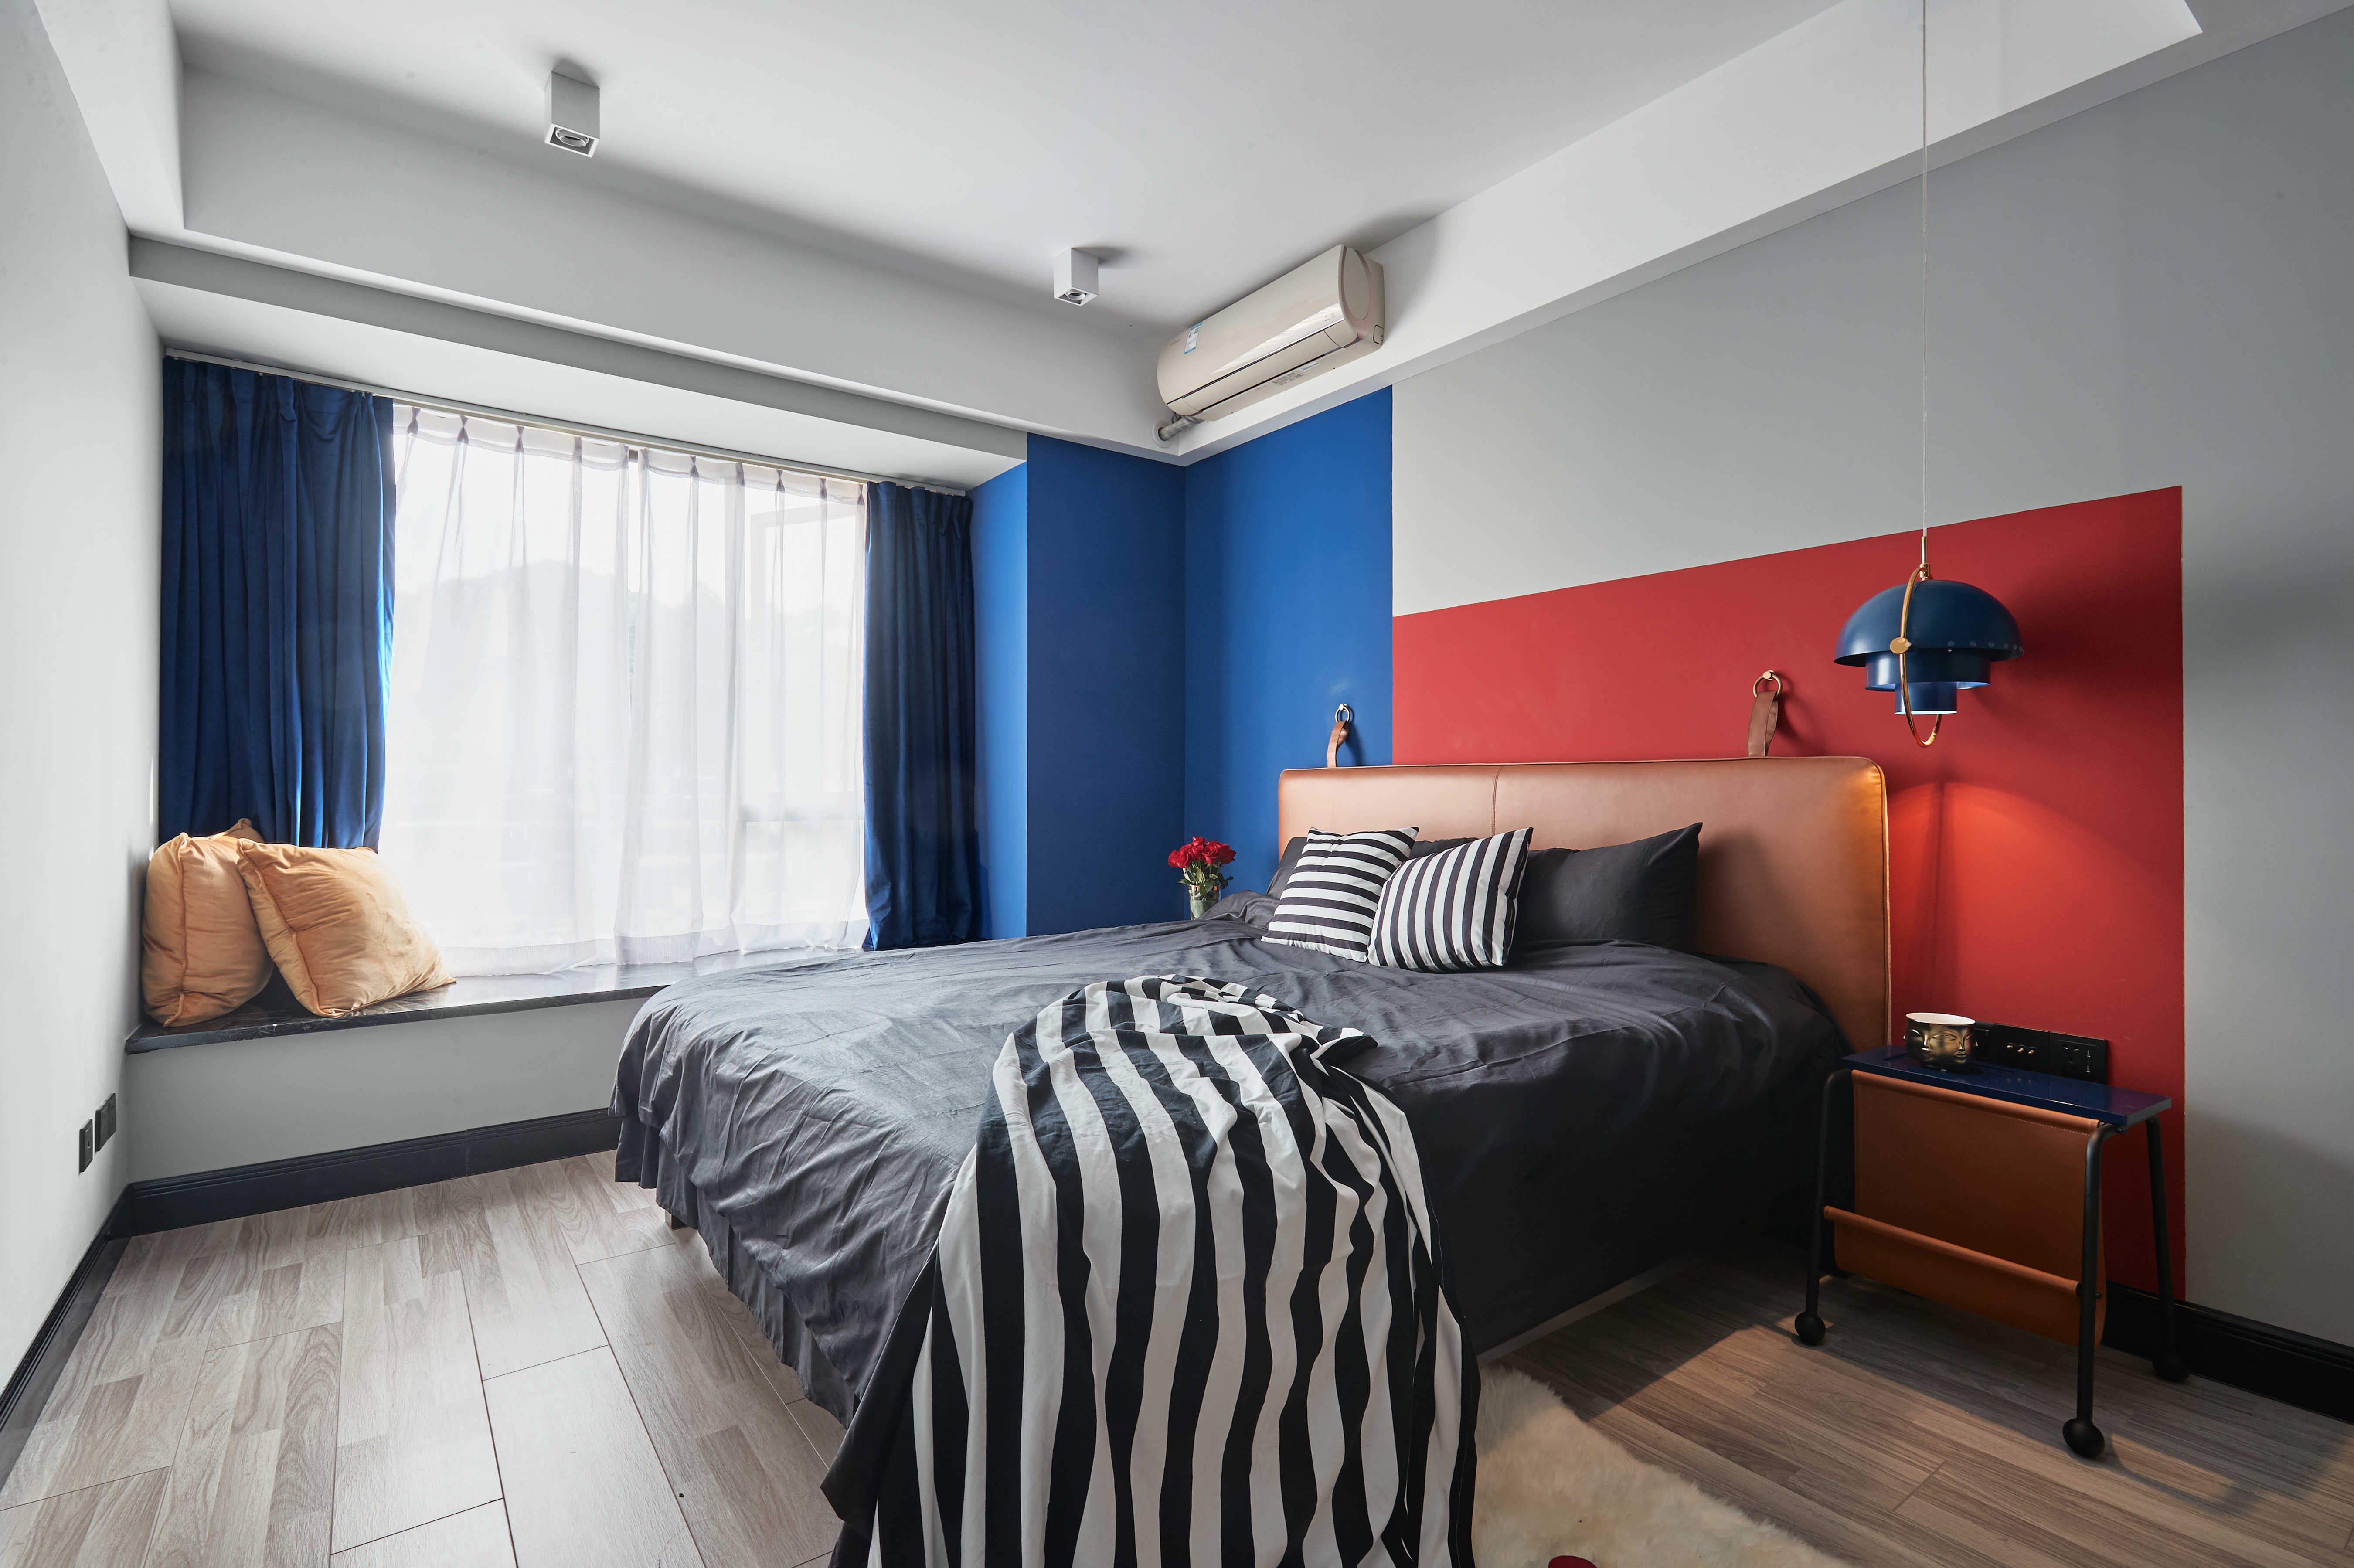 二居室装修,15-20万装修,90平米装修,混搭风格,卧室,卧室背景墙,蓝色,红色